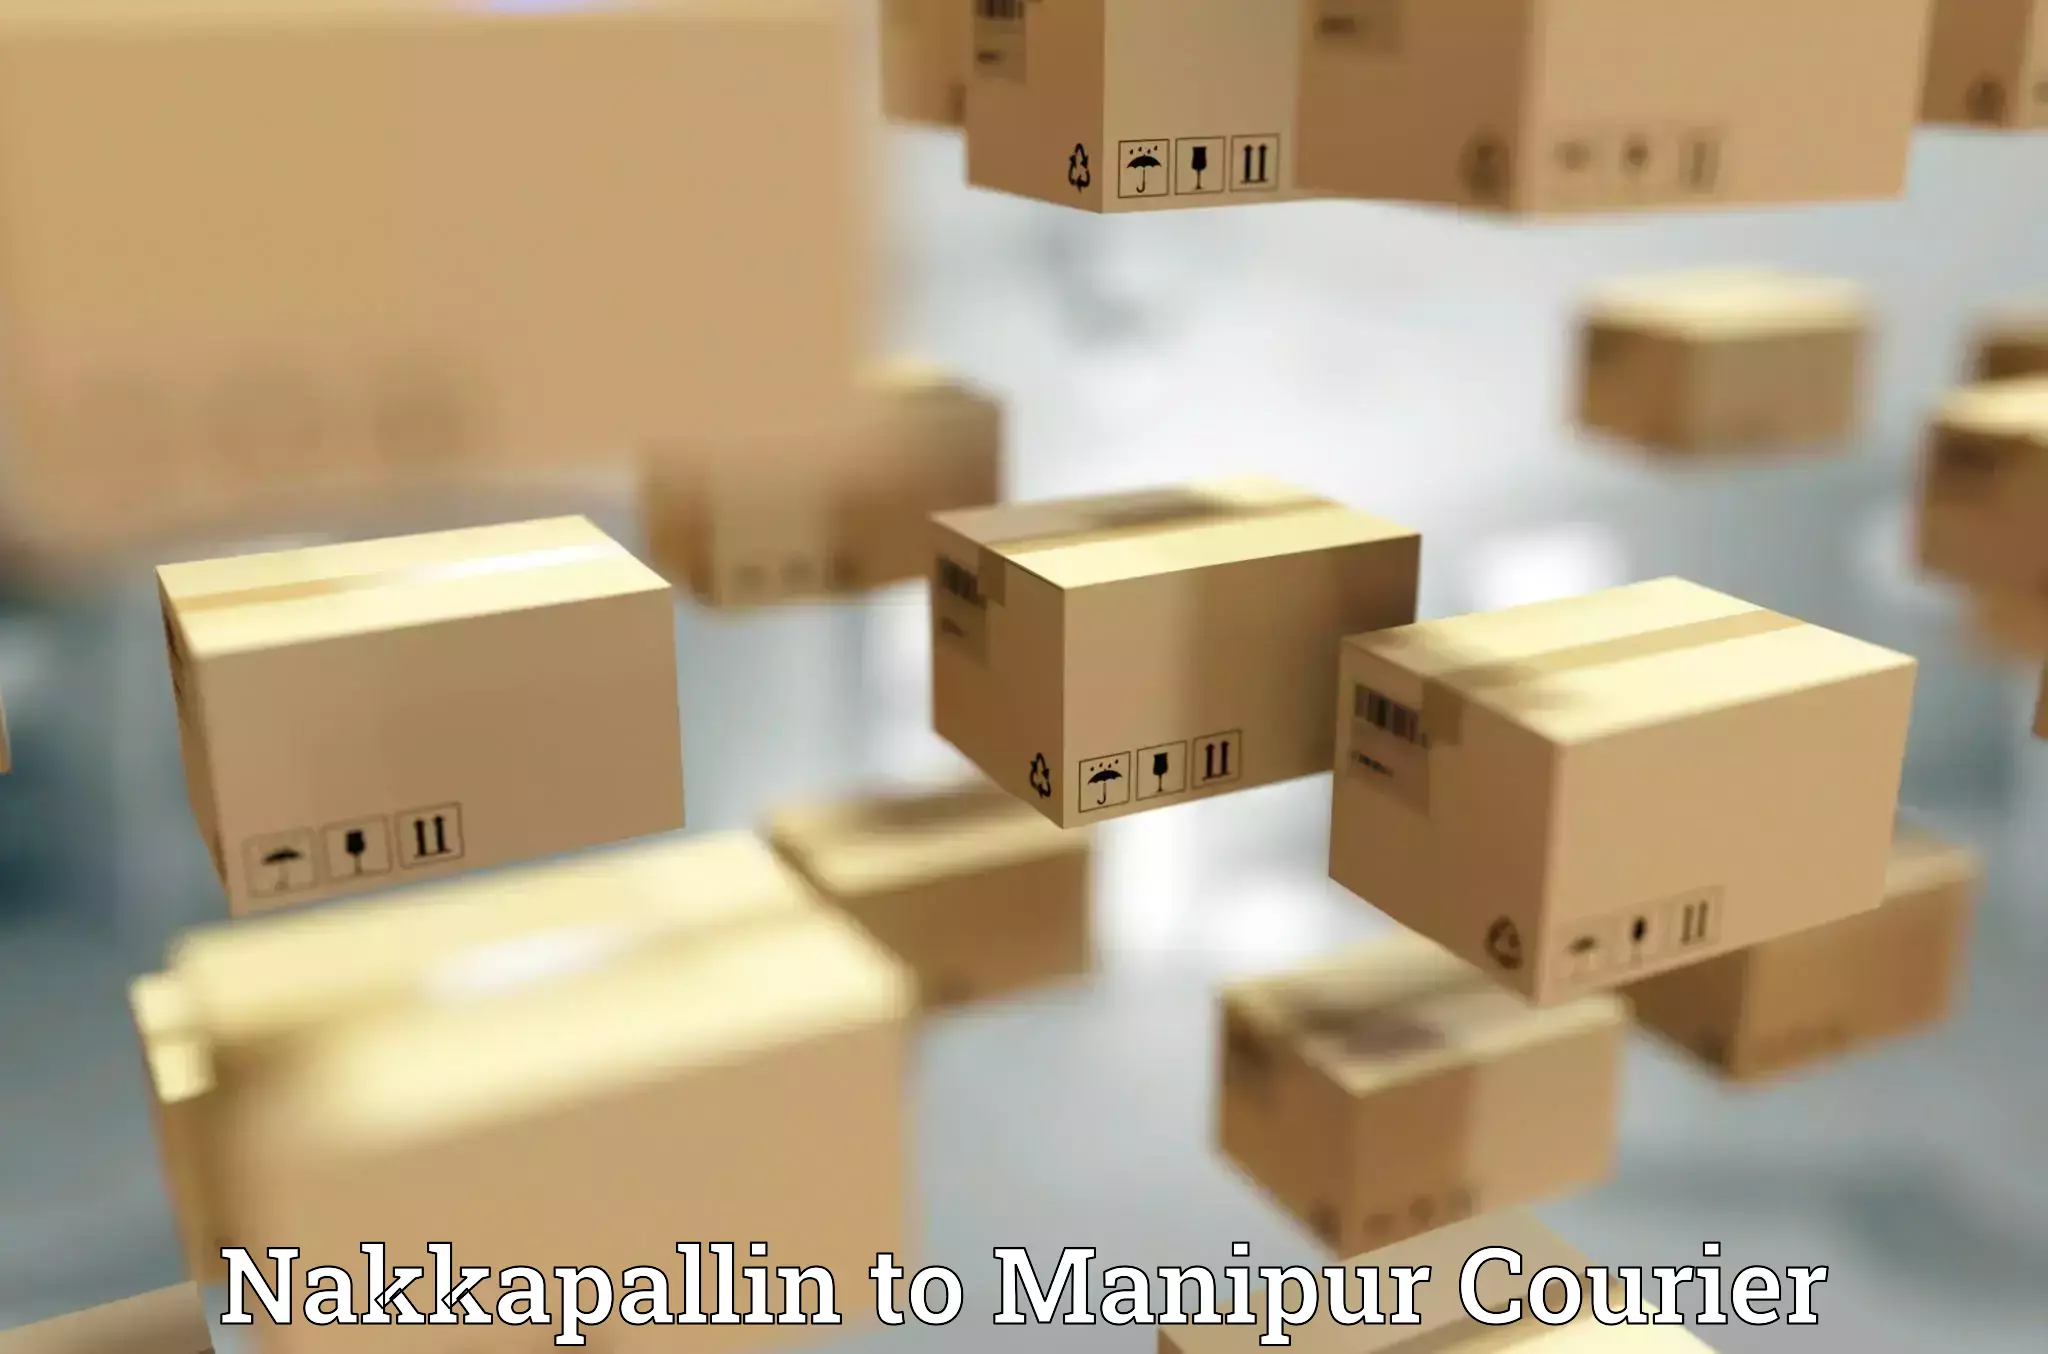 Global shipping networks Nakkapallin to Manipur